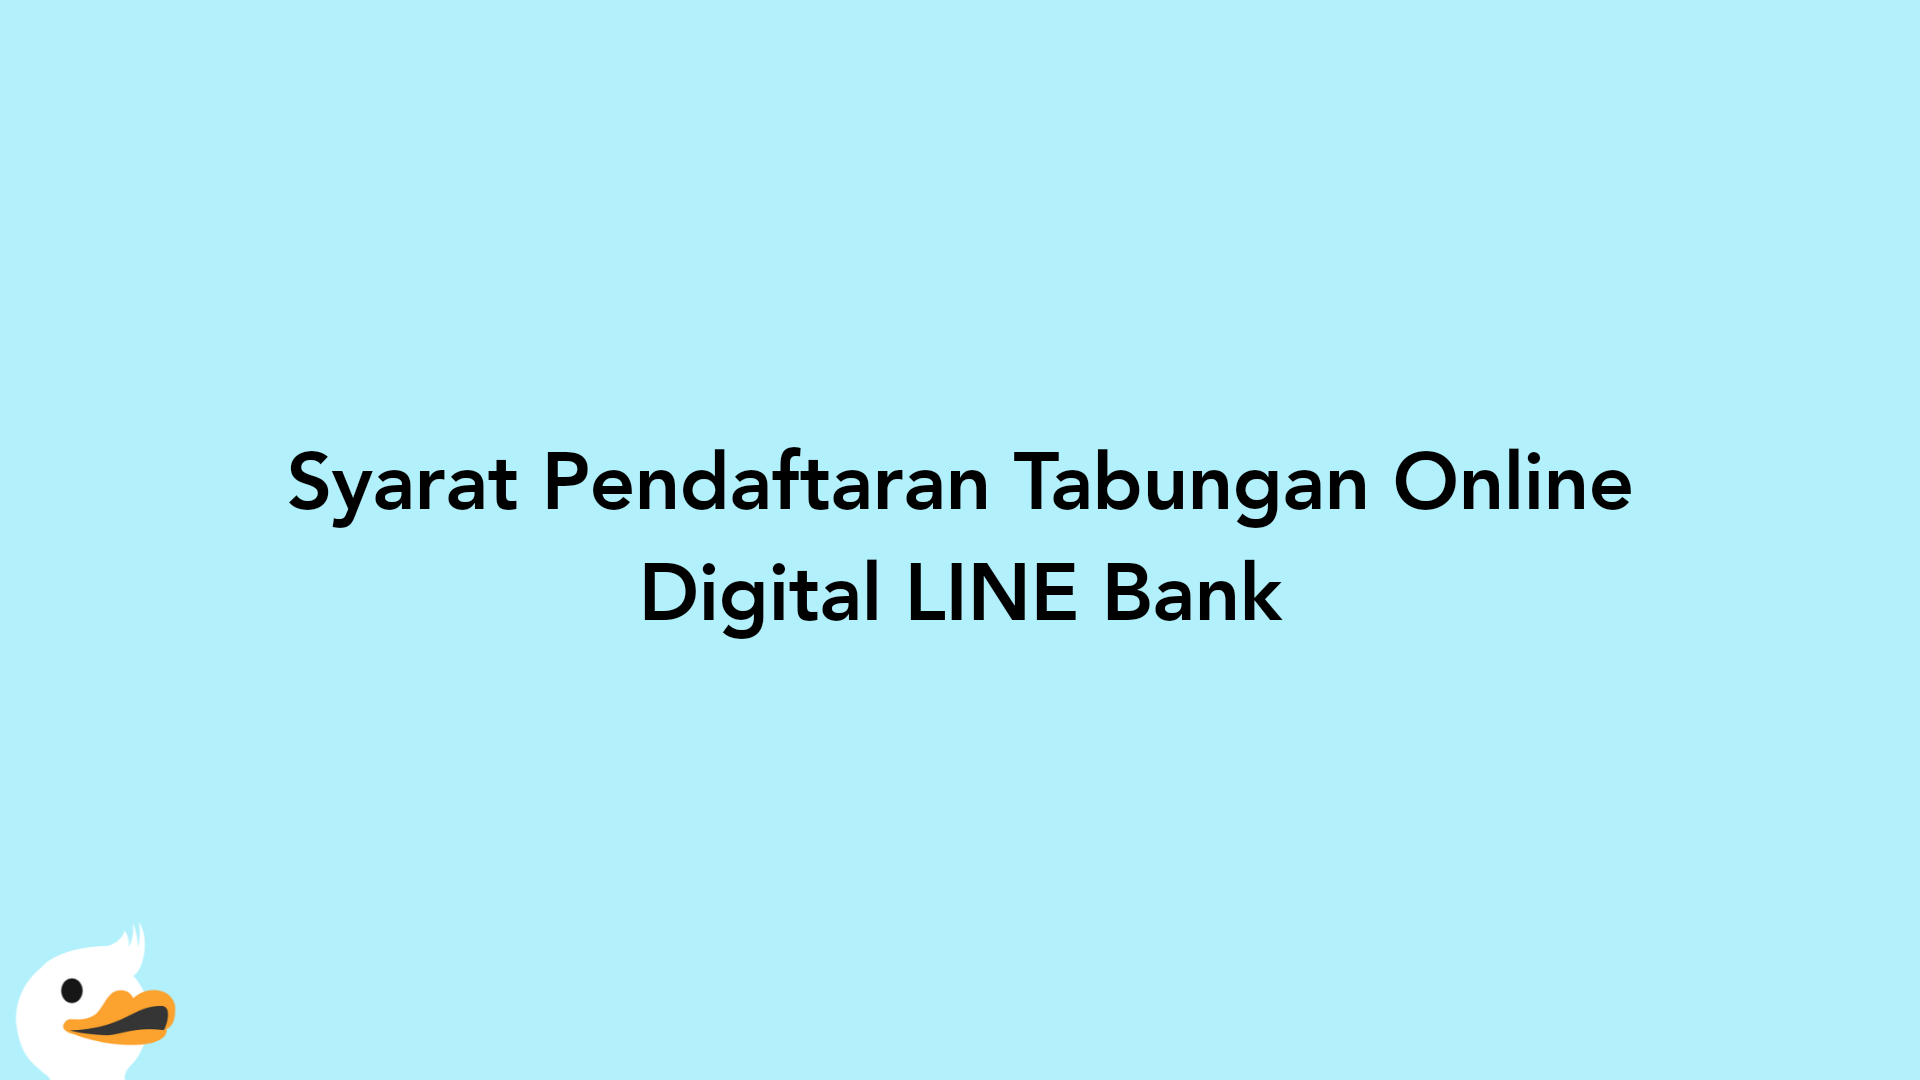 Syarat Pendaftaran Tabungan Online Digital LINE Bank